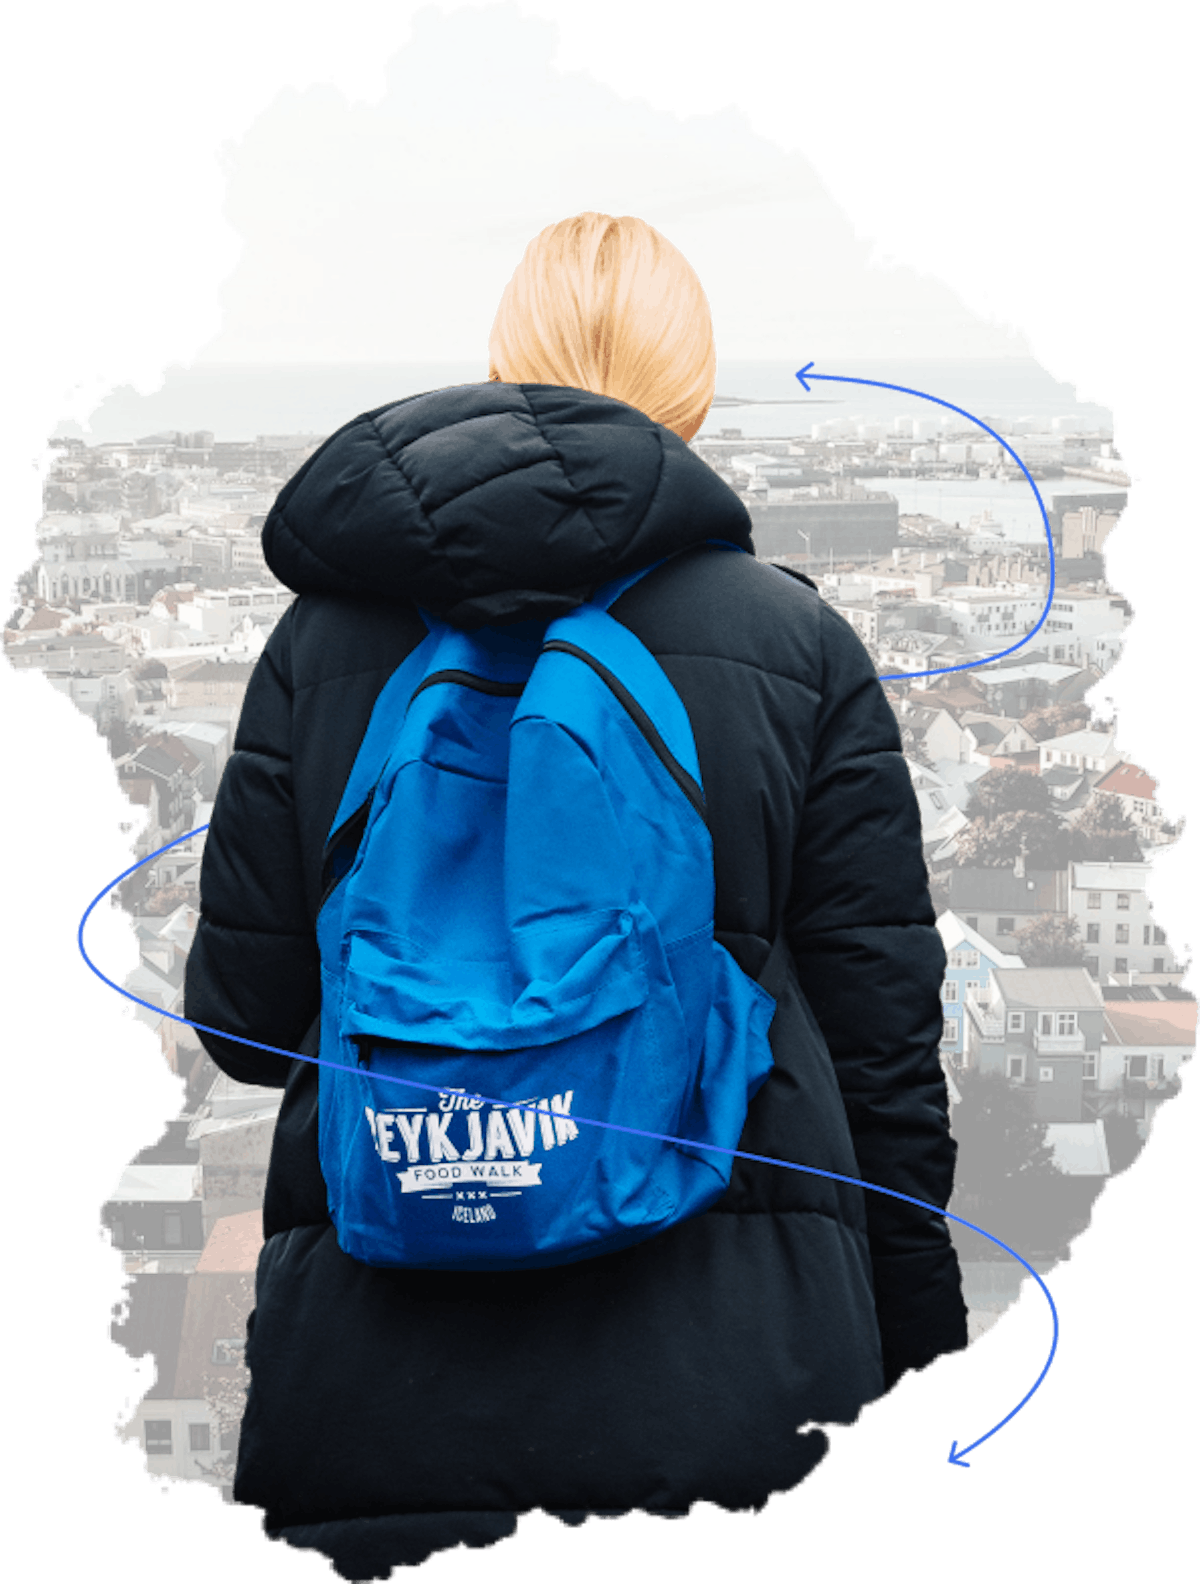 tour in reykjavik